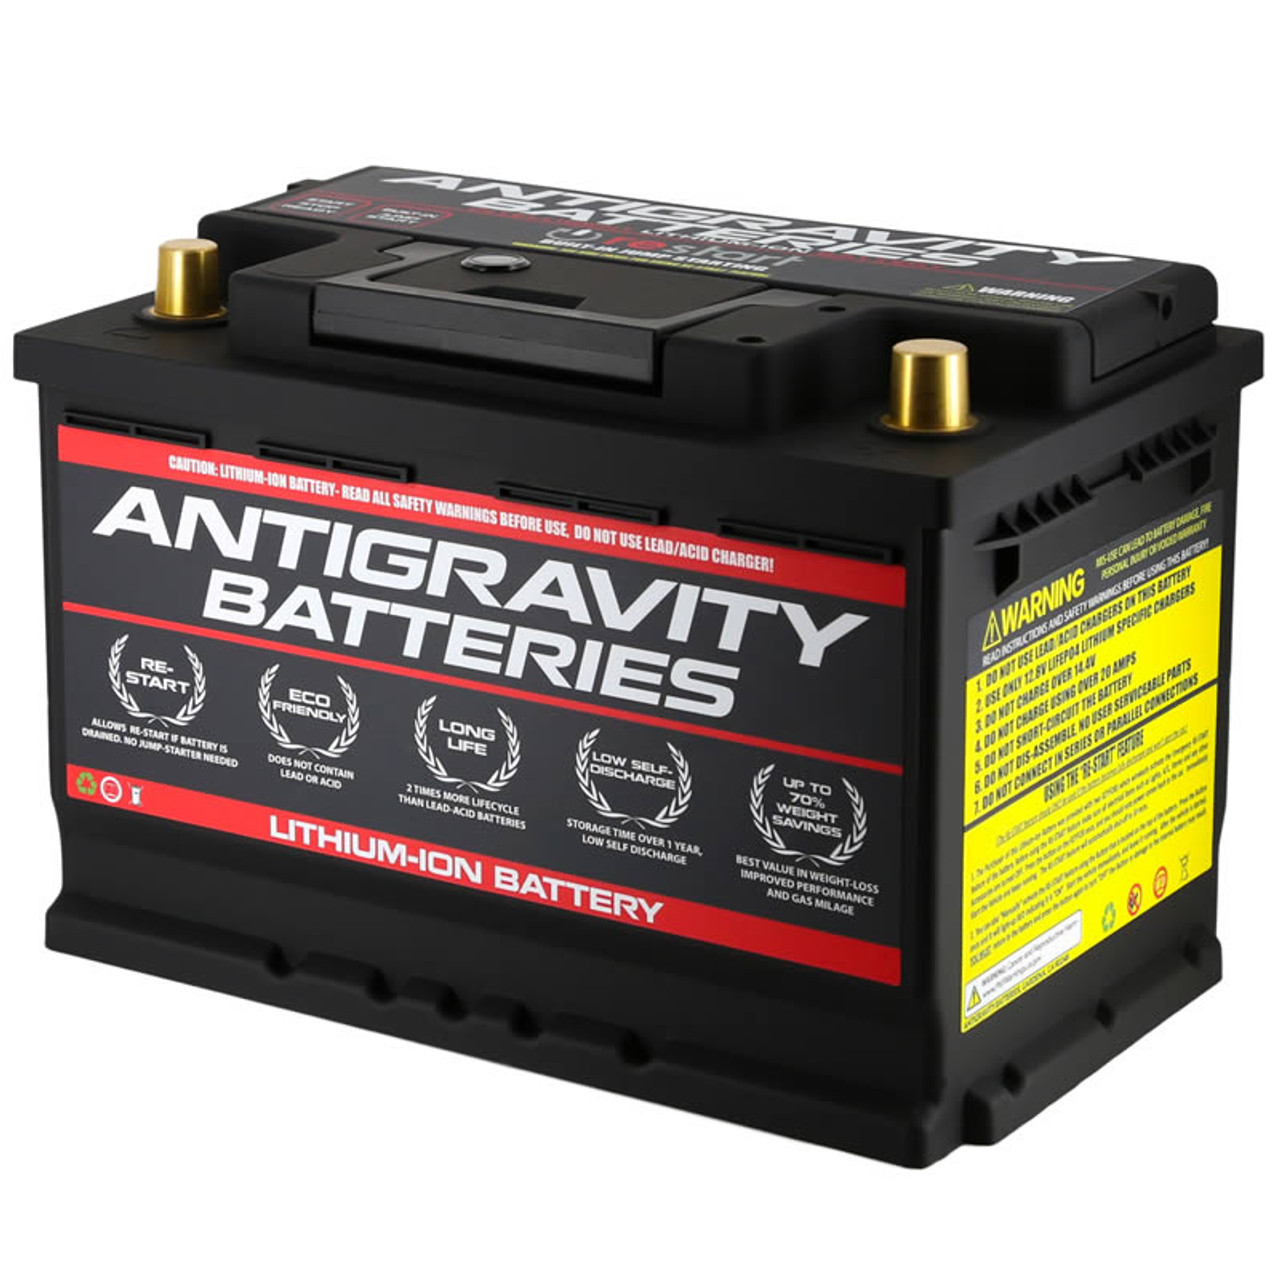 Turbo Start 16V Lightweight Battery